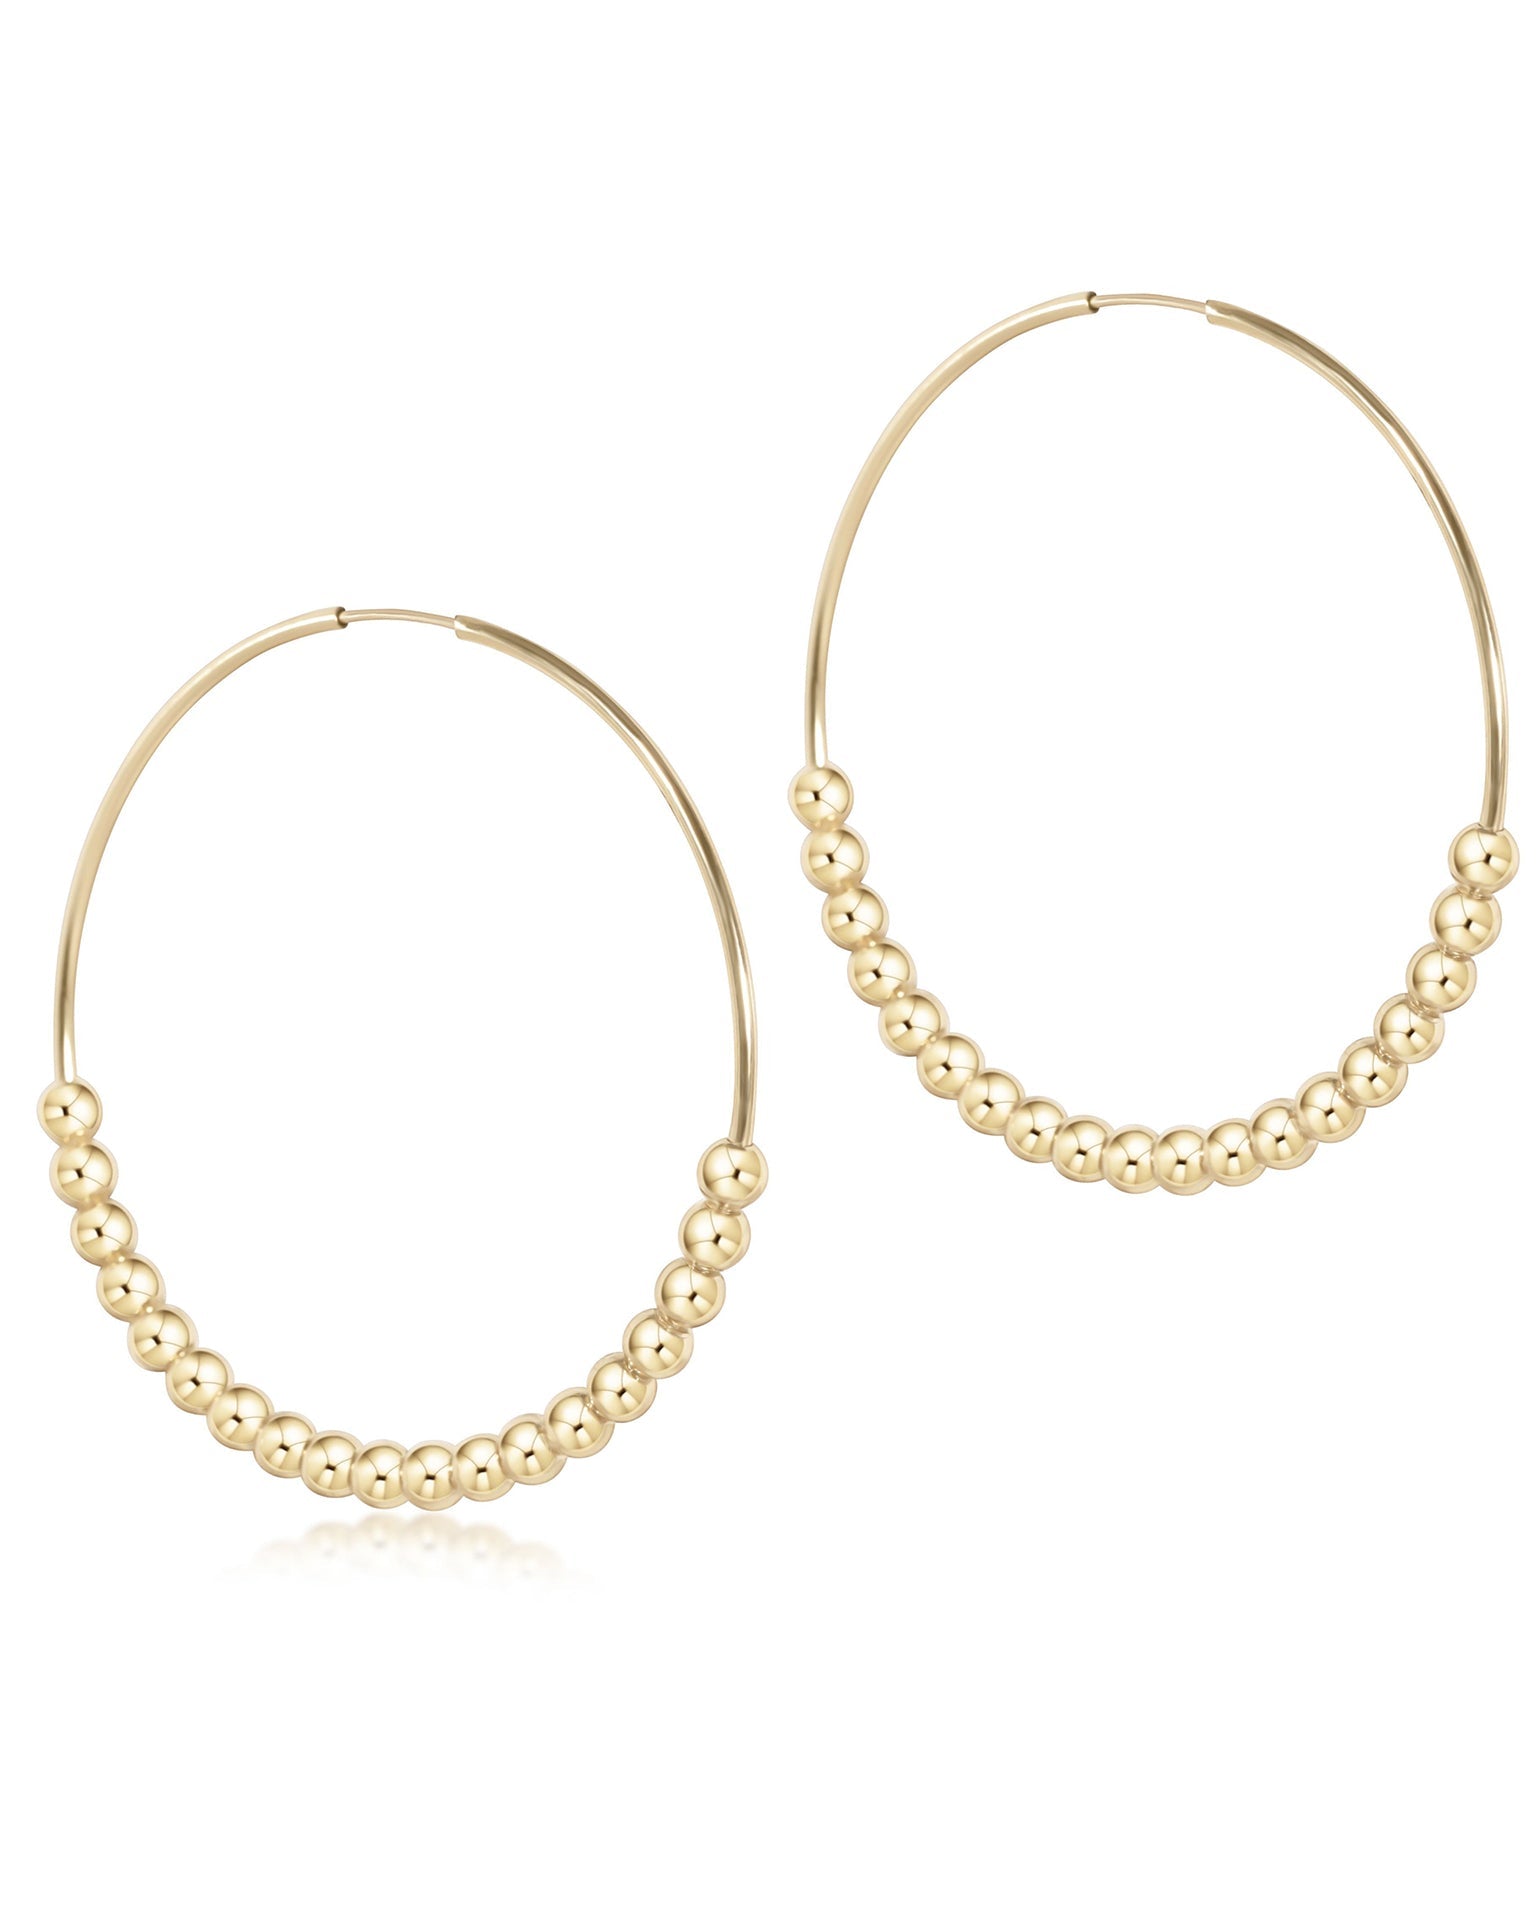 Women's high Fashion Classic Hoop Earrings 45mm /1.75 inch 14K Gold Filled  Brass | eBay